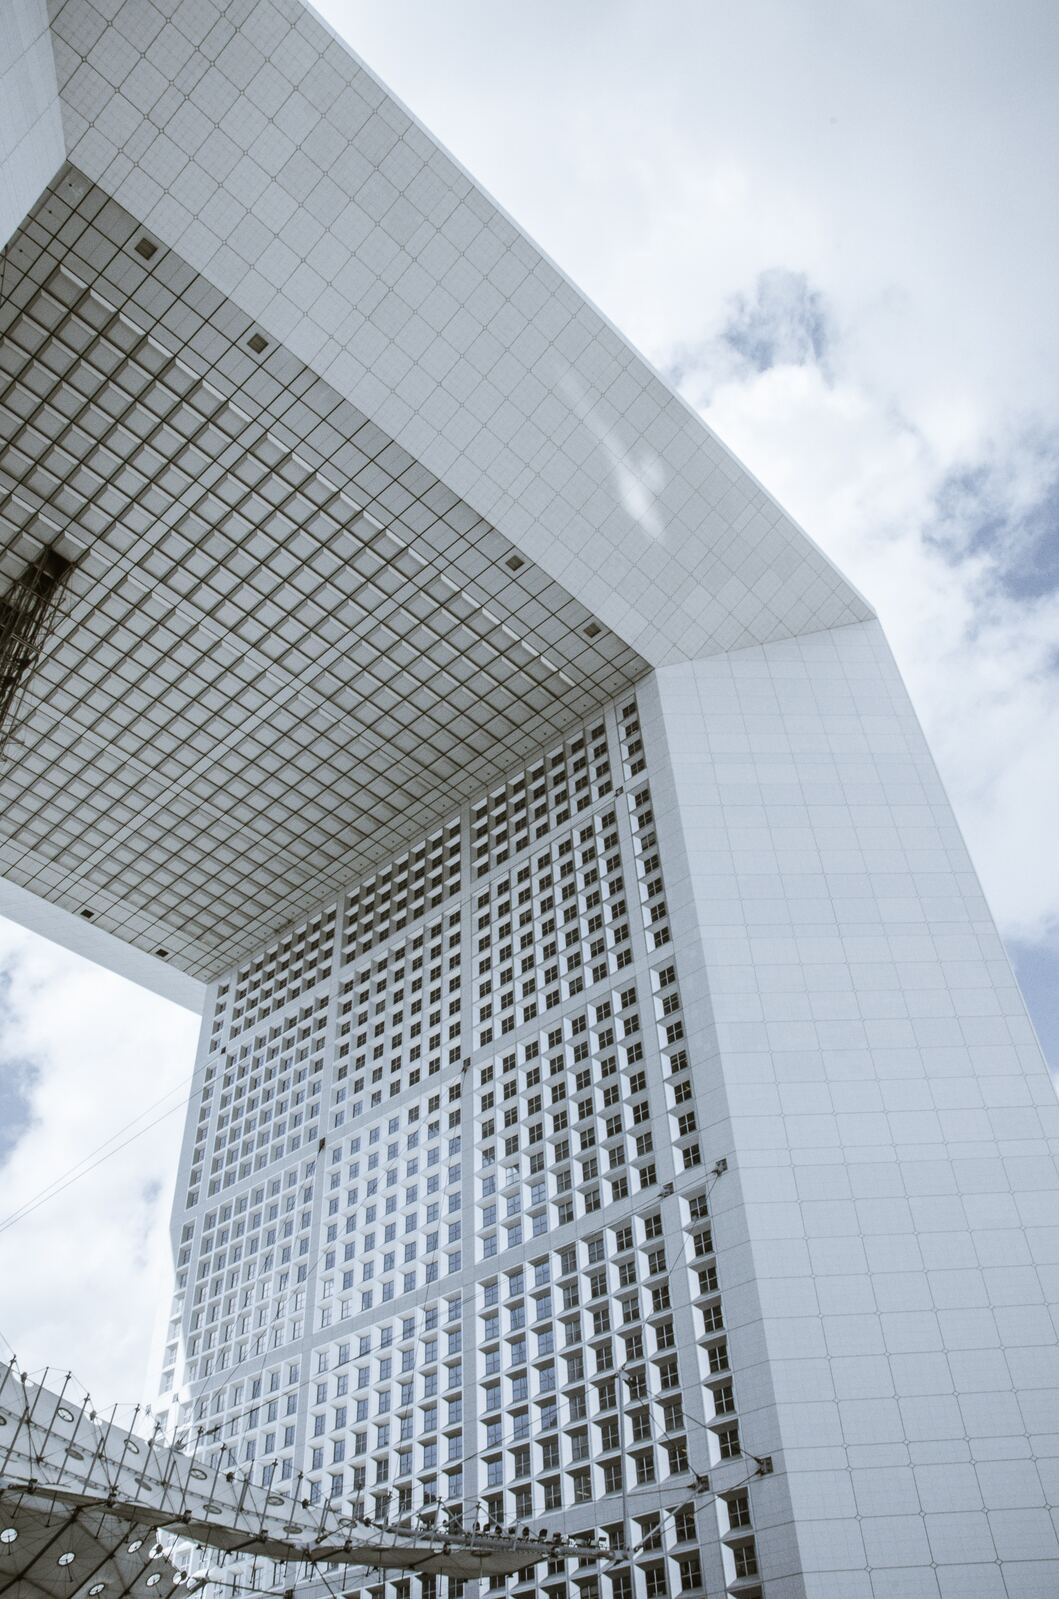 Image of Grande Arche de la Défense, Paris by Team PhotoHound